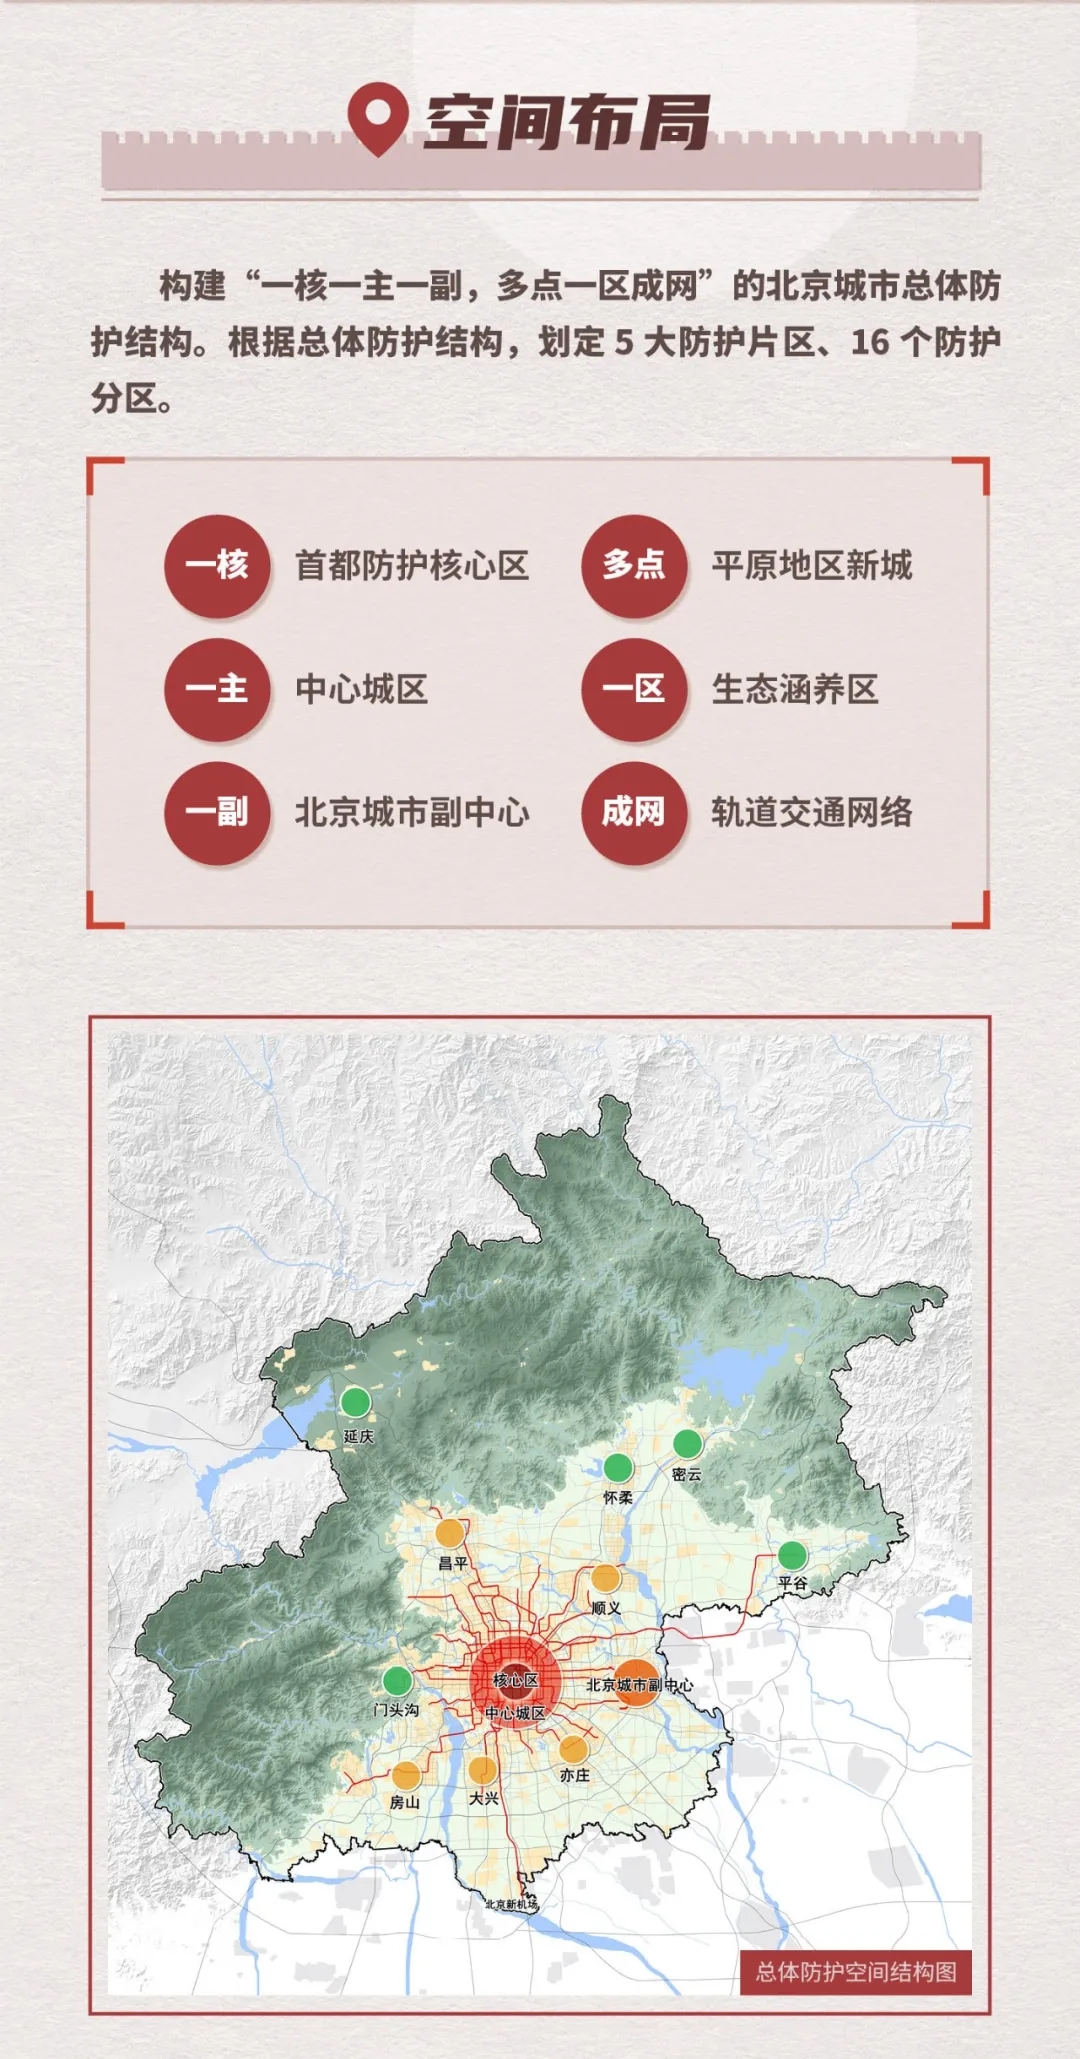 一张图读懂《北京人民防空建设规划(2018年-2035年)》